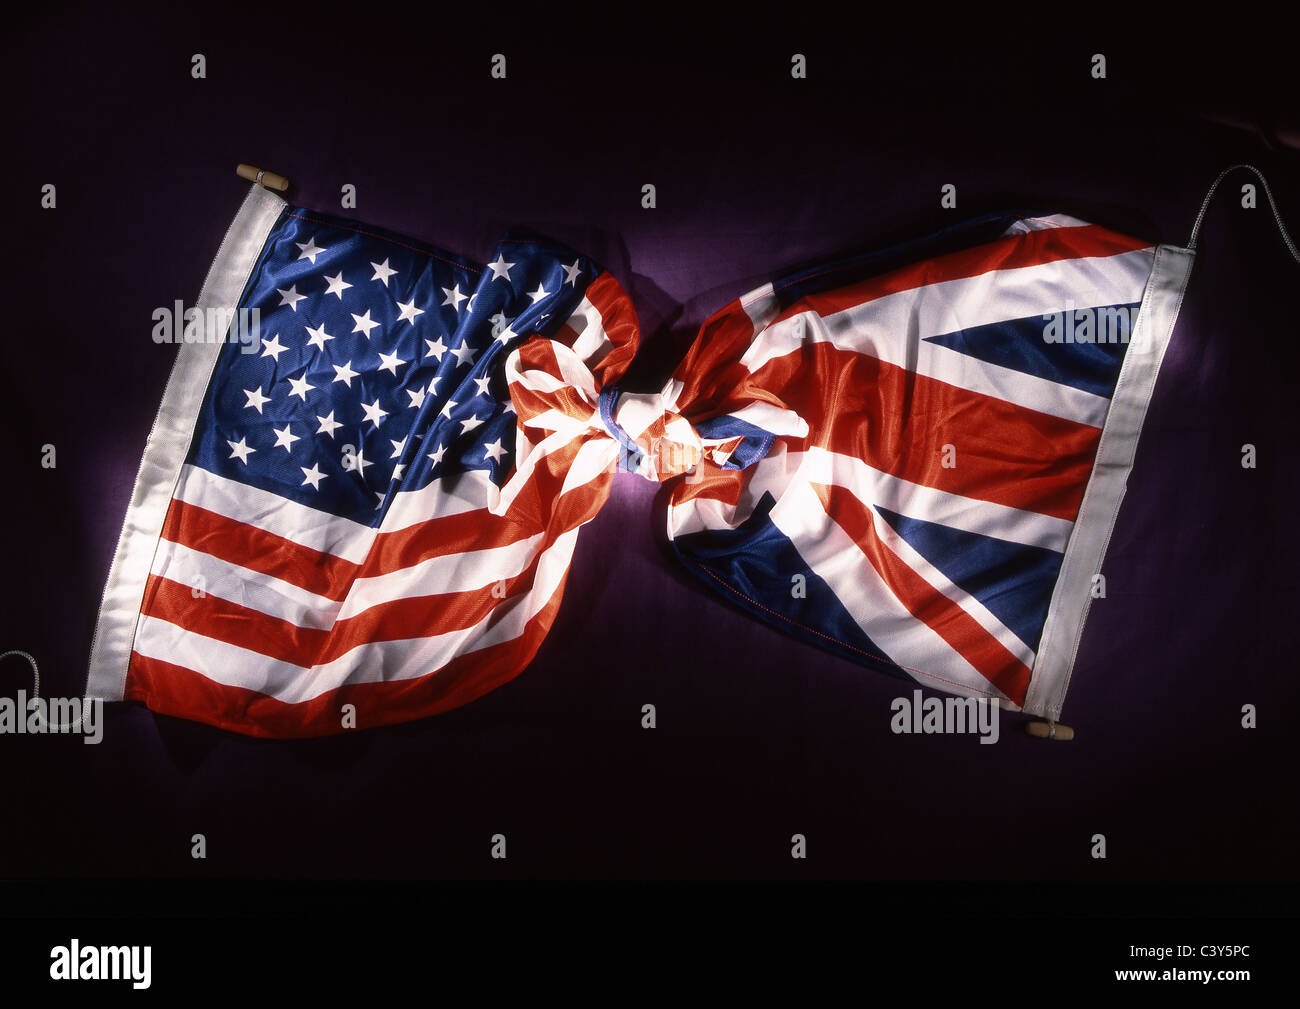 Vereinigte Staaten von Amerika Stars And Stripes Flagge verknotet zusammen mit britischen Union Jack-Flagge Stockfoto